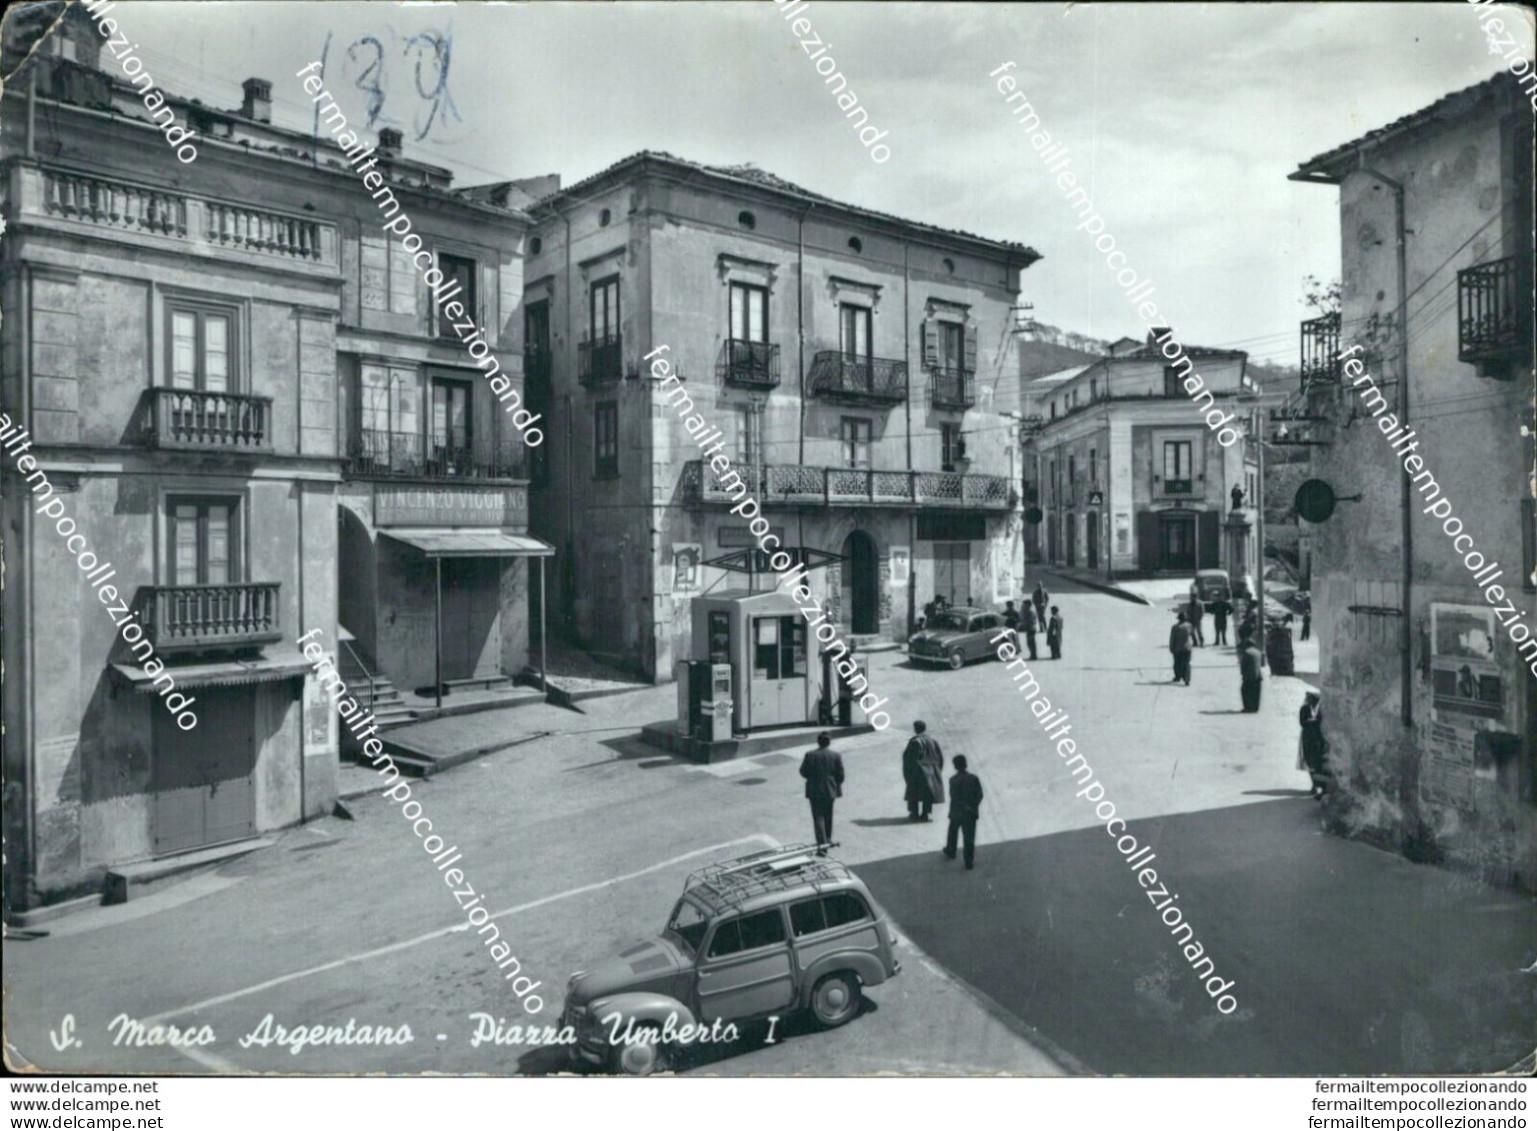 Bc497 Cartolina S.marco Argentano Piazza Umberto I Pieghe Provincia Di Cosenza - Cosenza